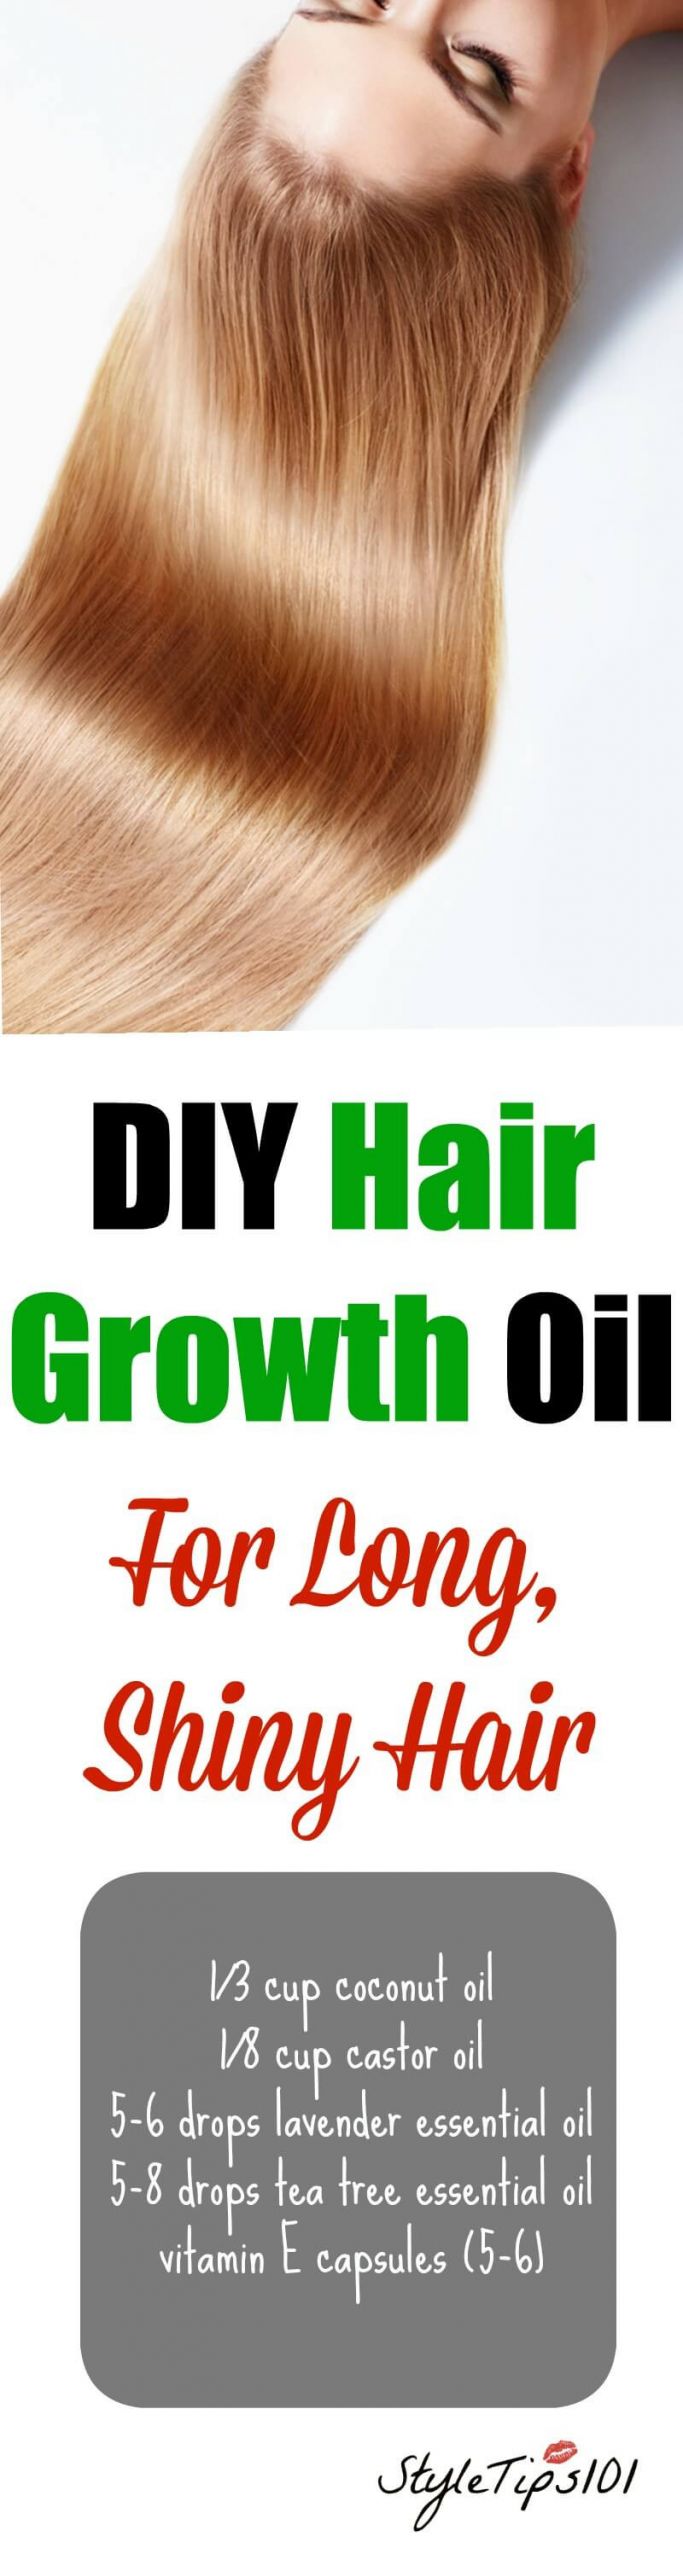 DIY Hair Growth
 DIY Hair Growth Oil For Super Long Shiny Hair